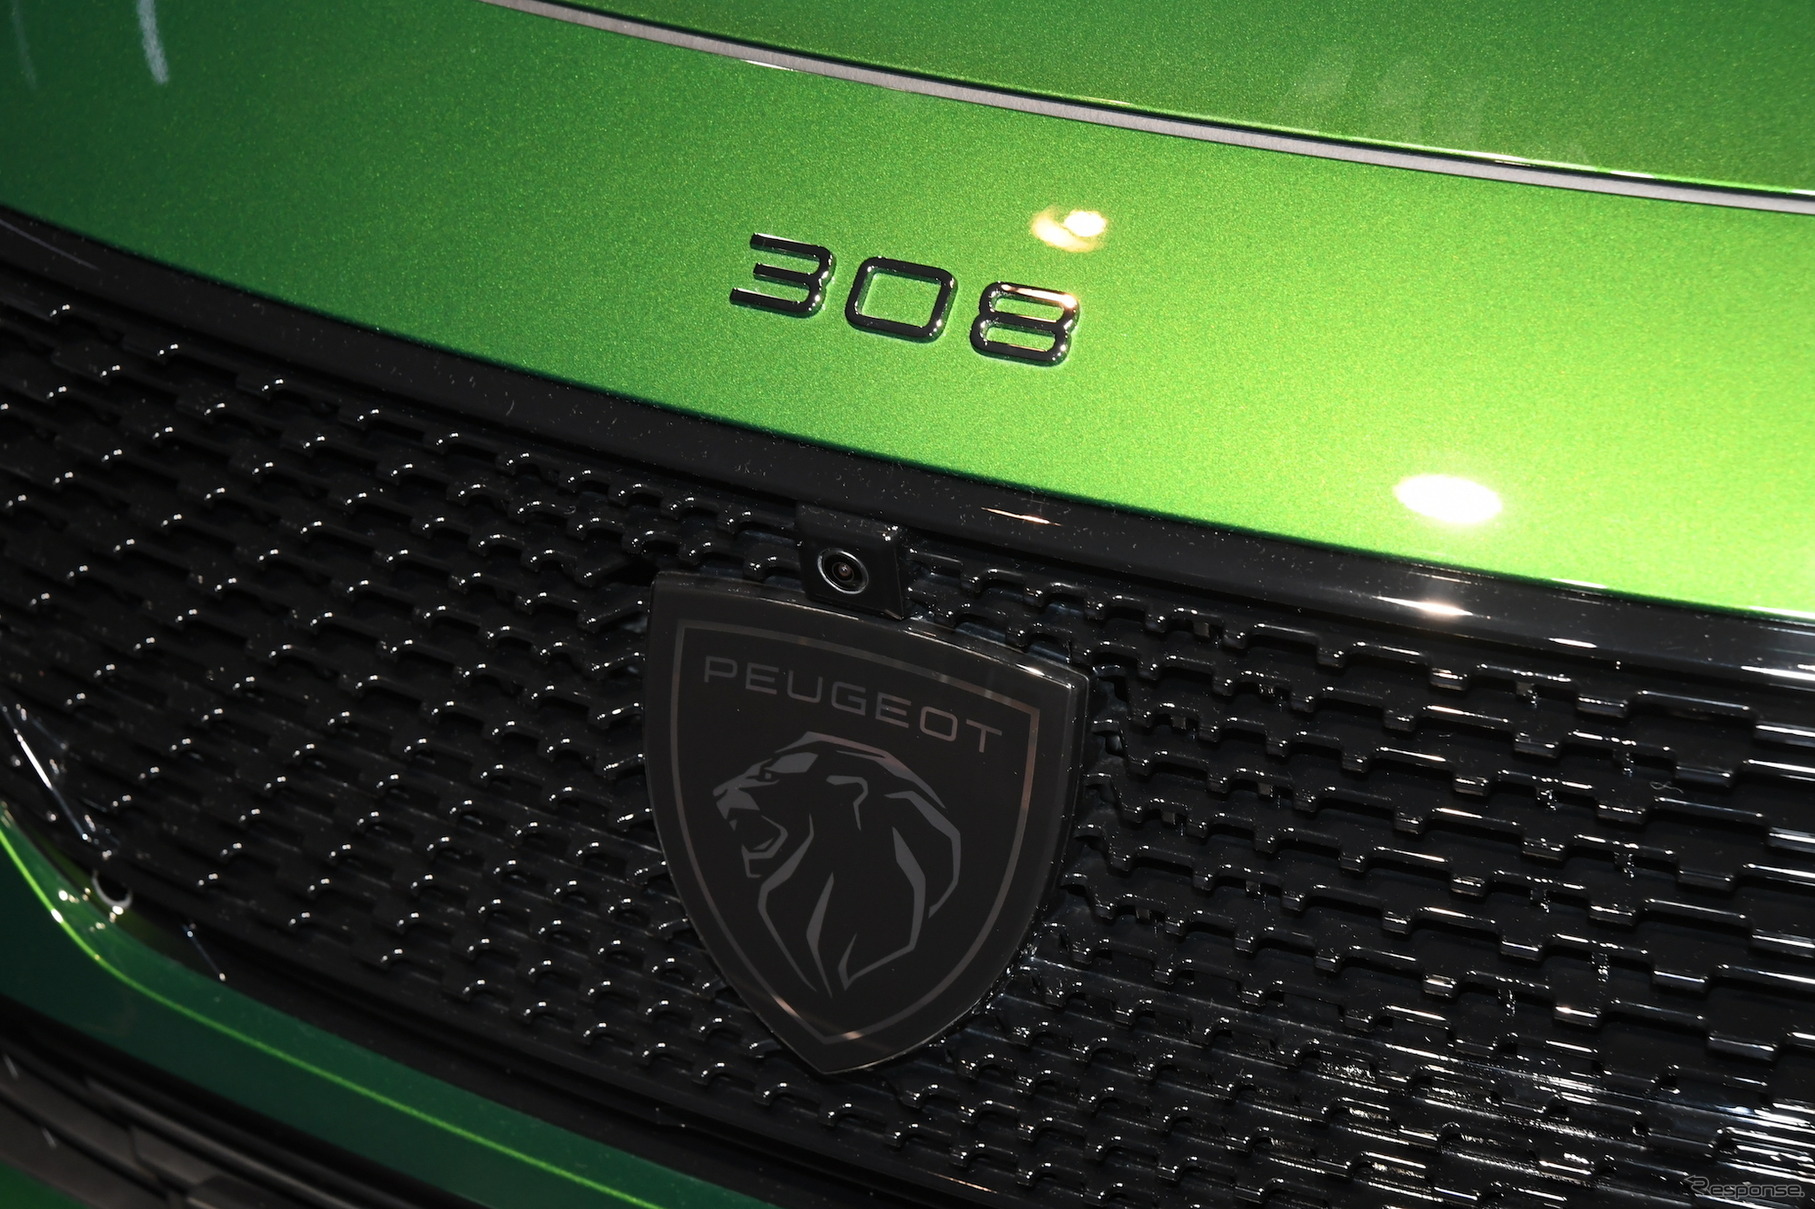 プジョー 308 新型 GT グレード